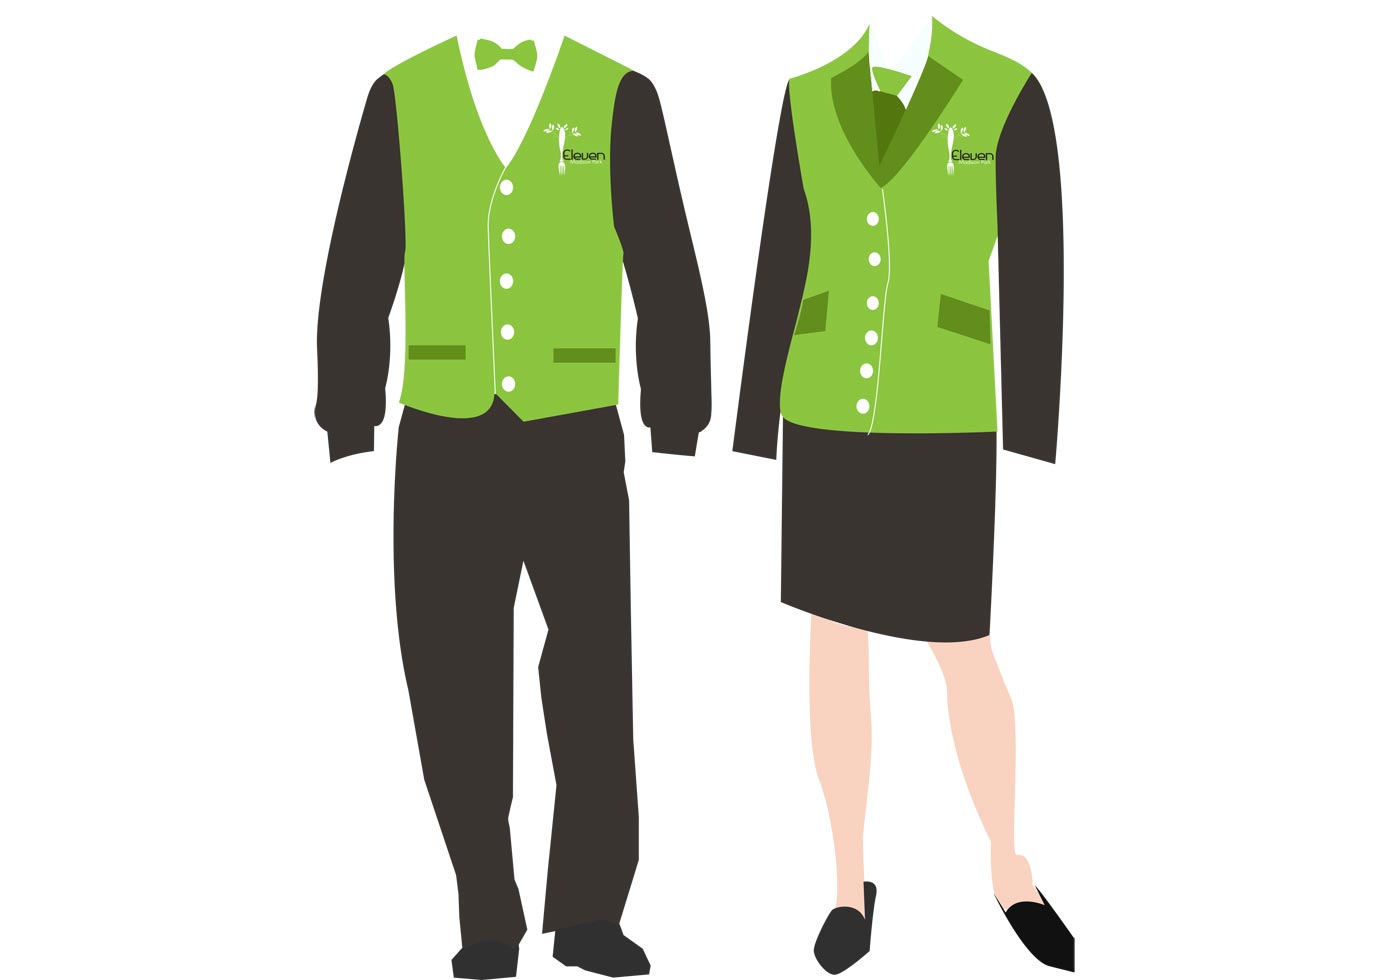 Форма без сайта. Корпоративный стиль одежды. Форменная одежда. Униформа для персонала. Сотрудники в зеленой форме.